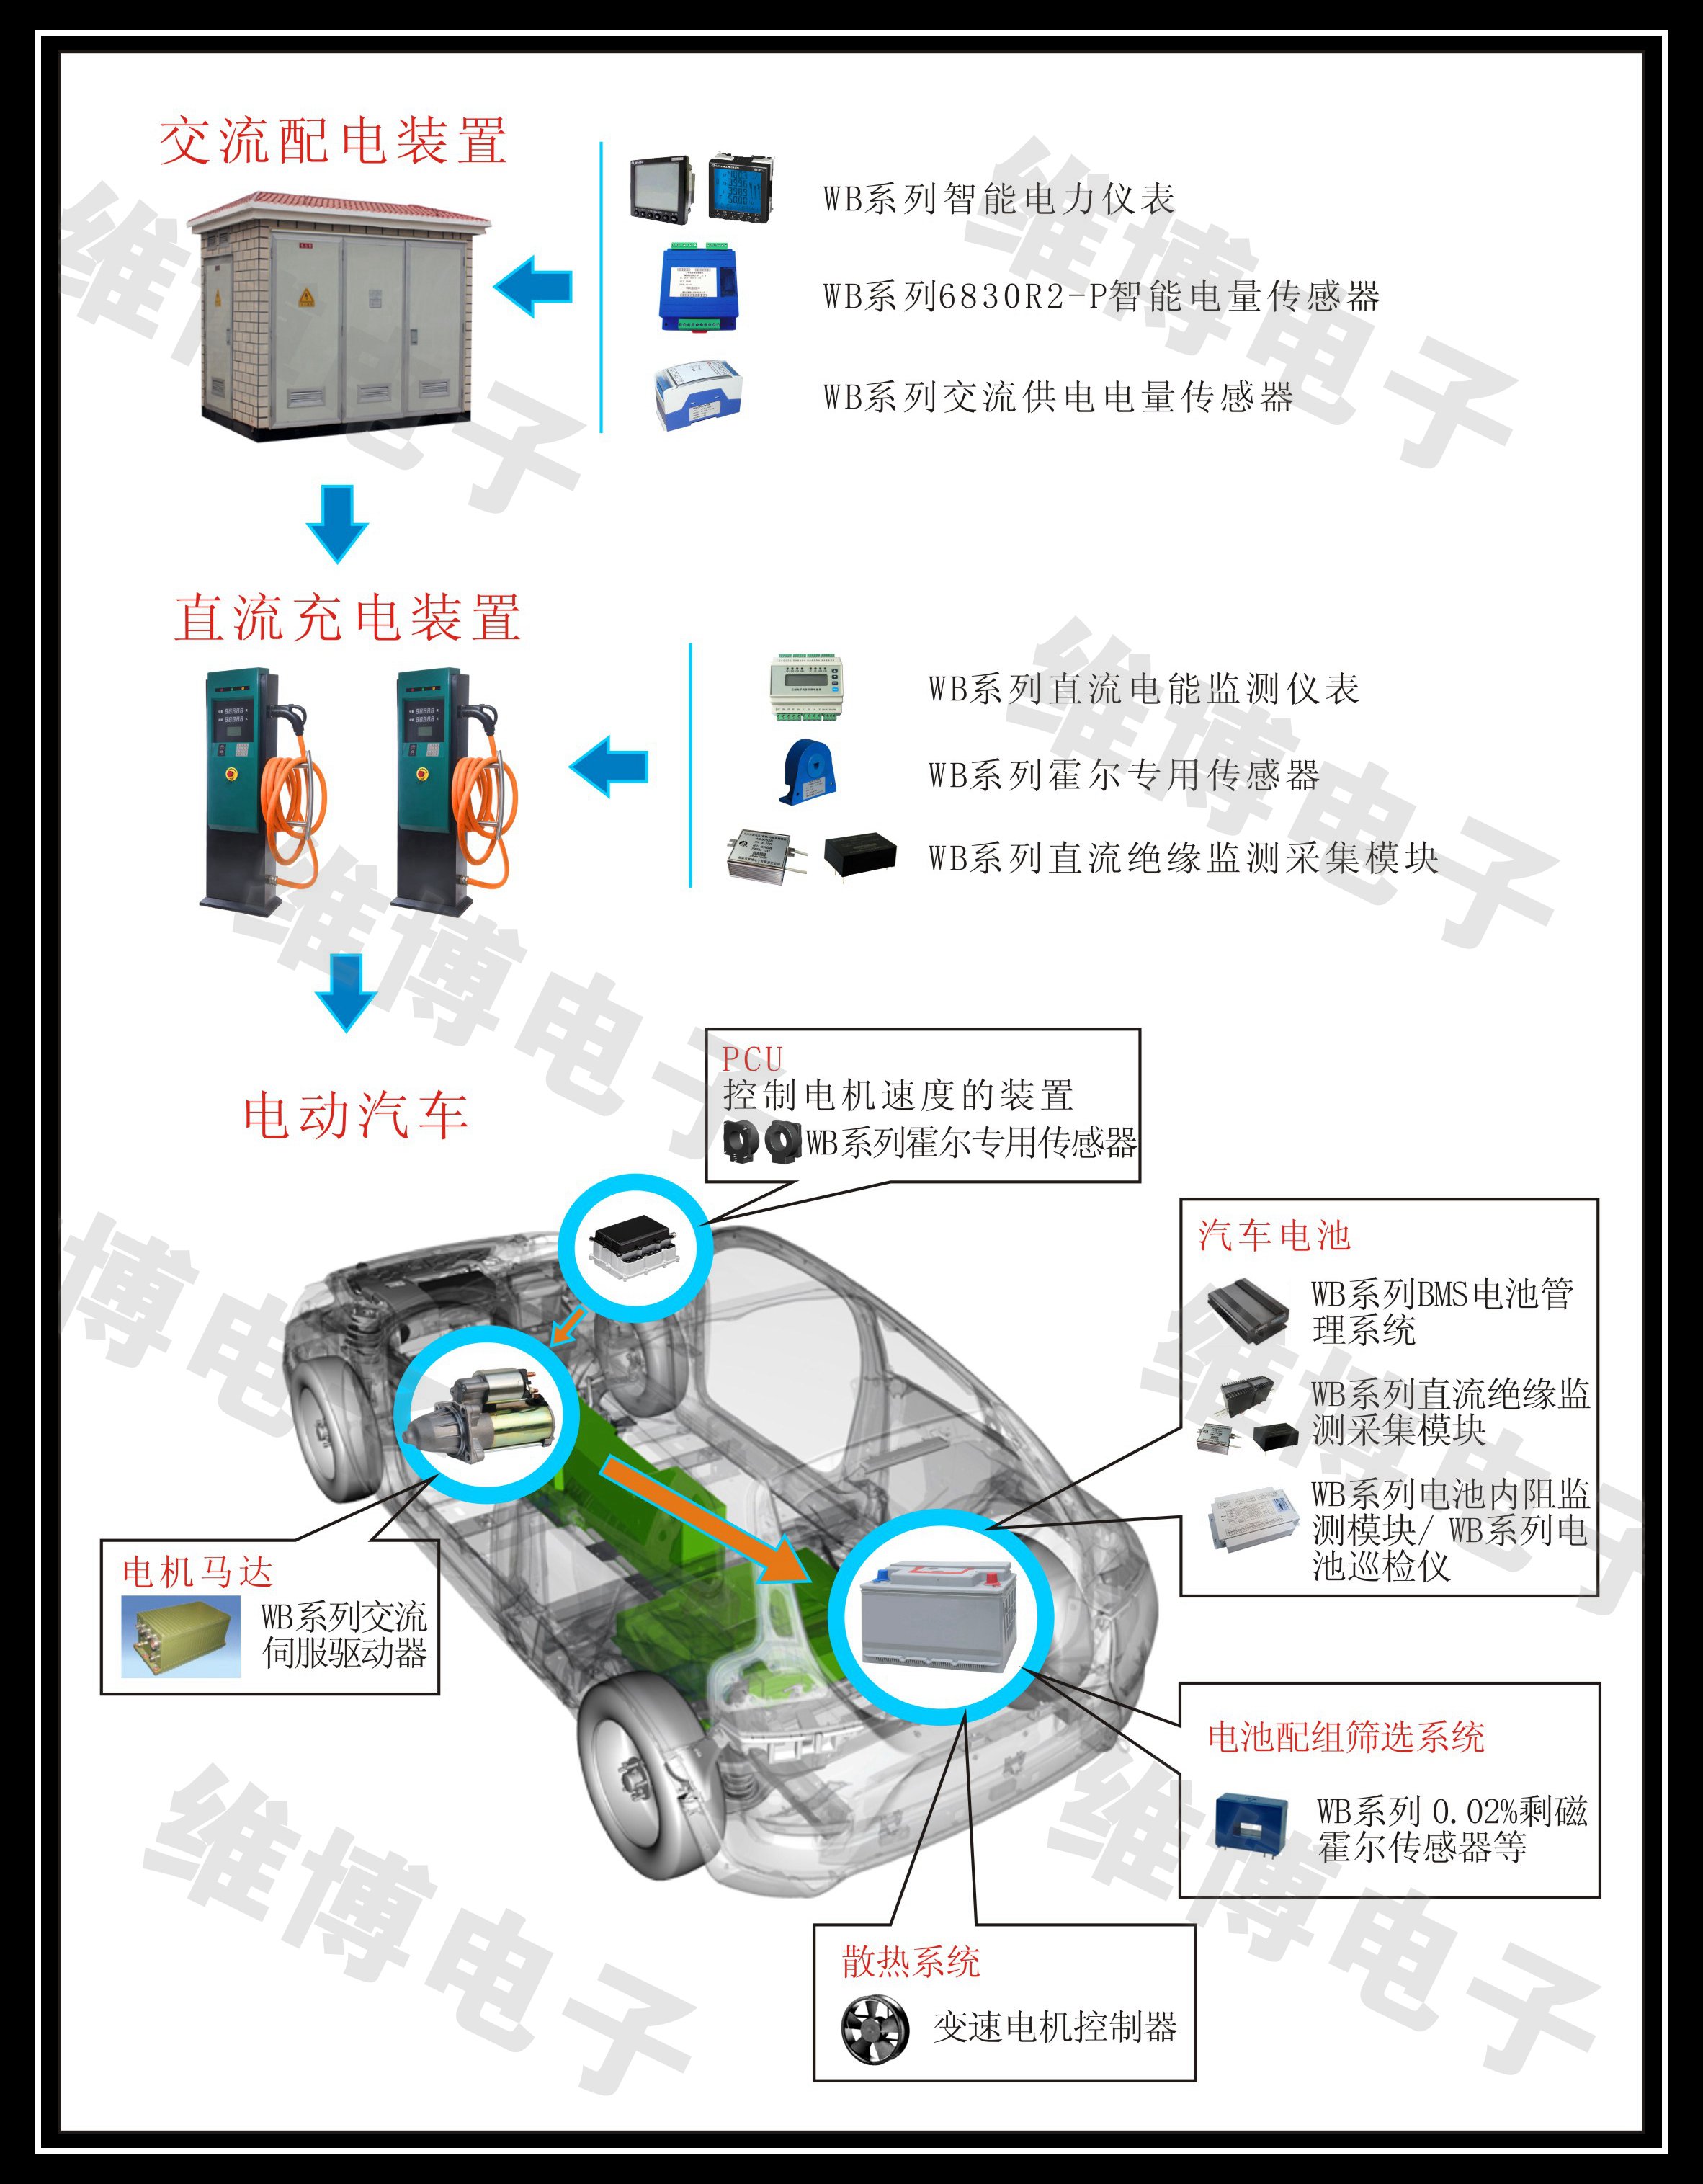 韩国某汽车巨头与维博电子就新能源汽车专用电量隔离传感器达成合作